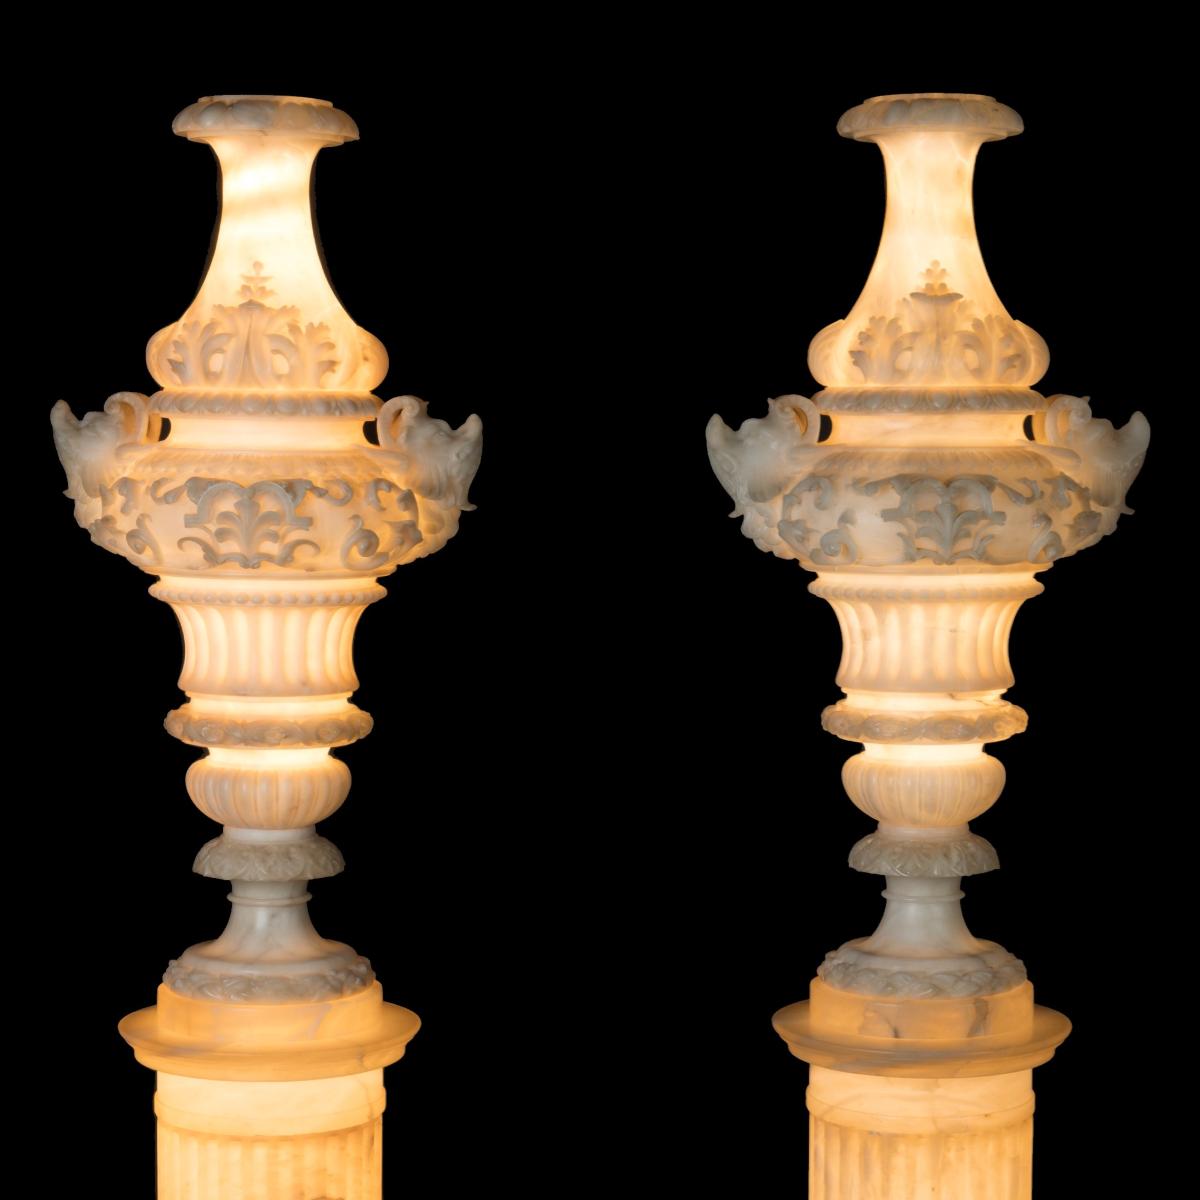 Alabaster Renaissance Revival Ornamental Vases on Pedestals